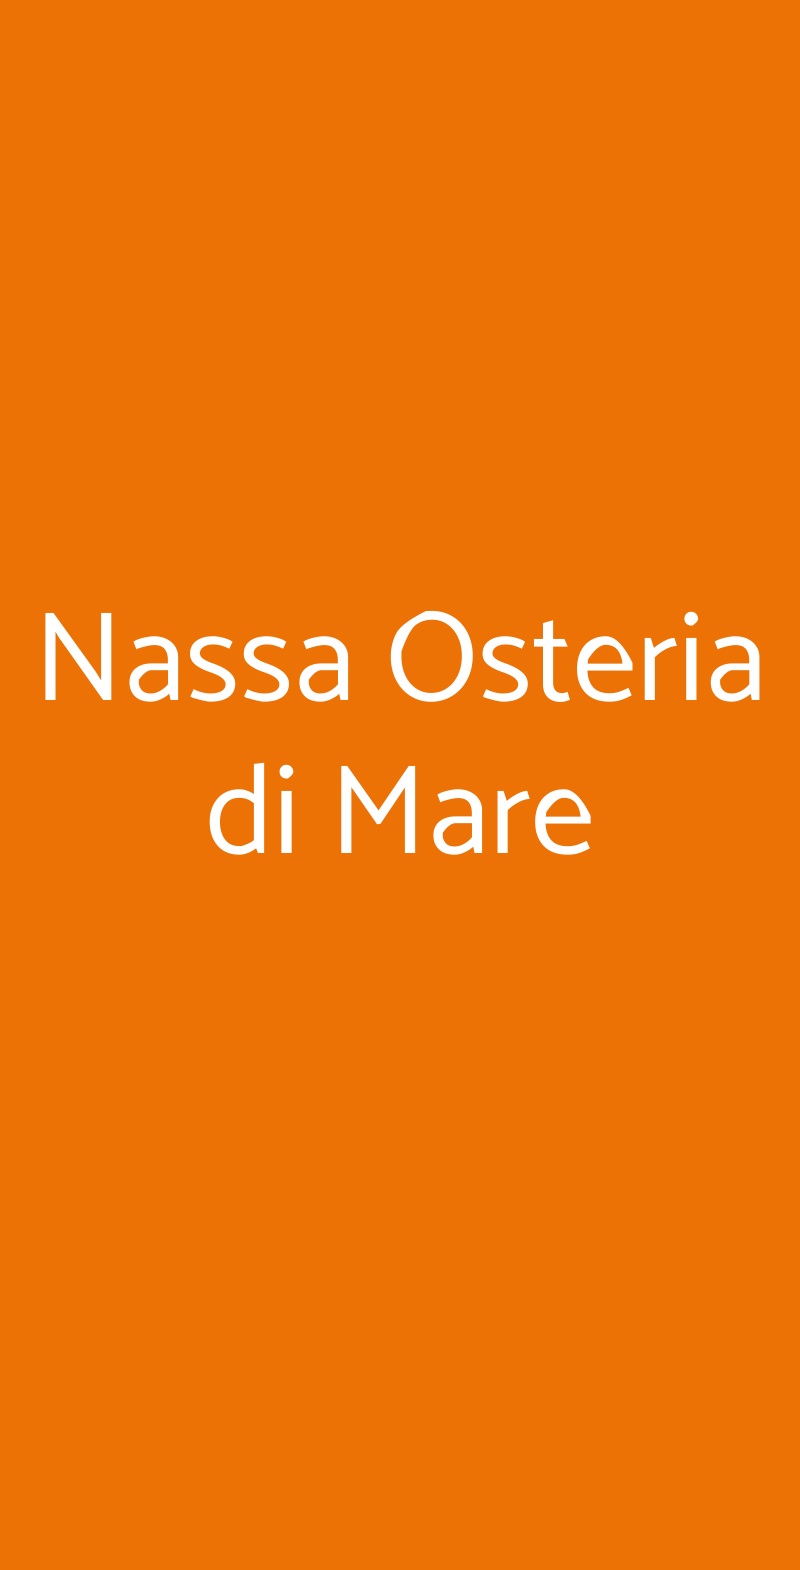 Nassa Osteria di Mare Milano menù 1 pagina